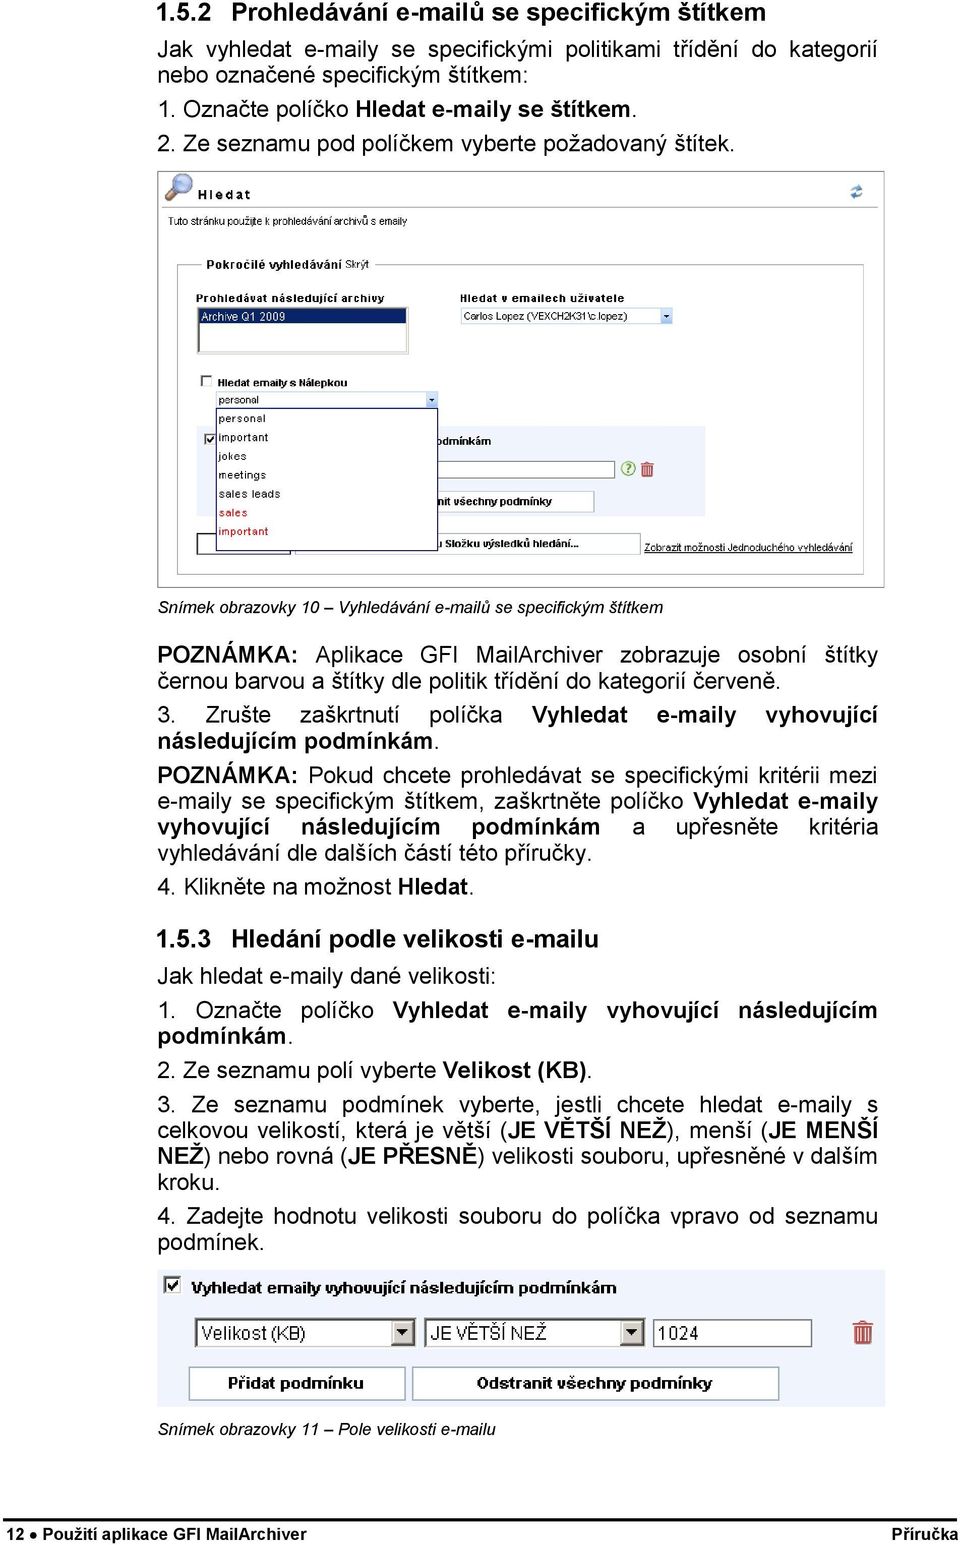 Snímek obrazovky 10 Vyhledávání e-mailů se specifickým štítkem POZNÁMKA: Aplikace GFI MailArchiver zobrazuje osobní štítky černou barvou a štítky dle politik třídění do kategorií červeně. 3.